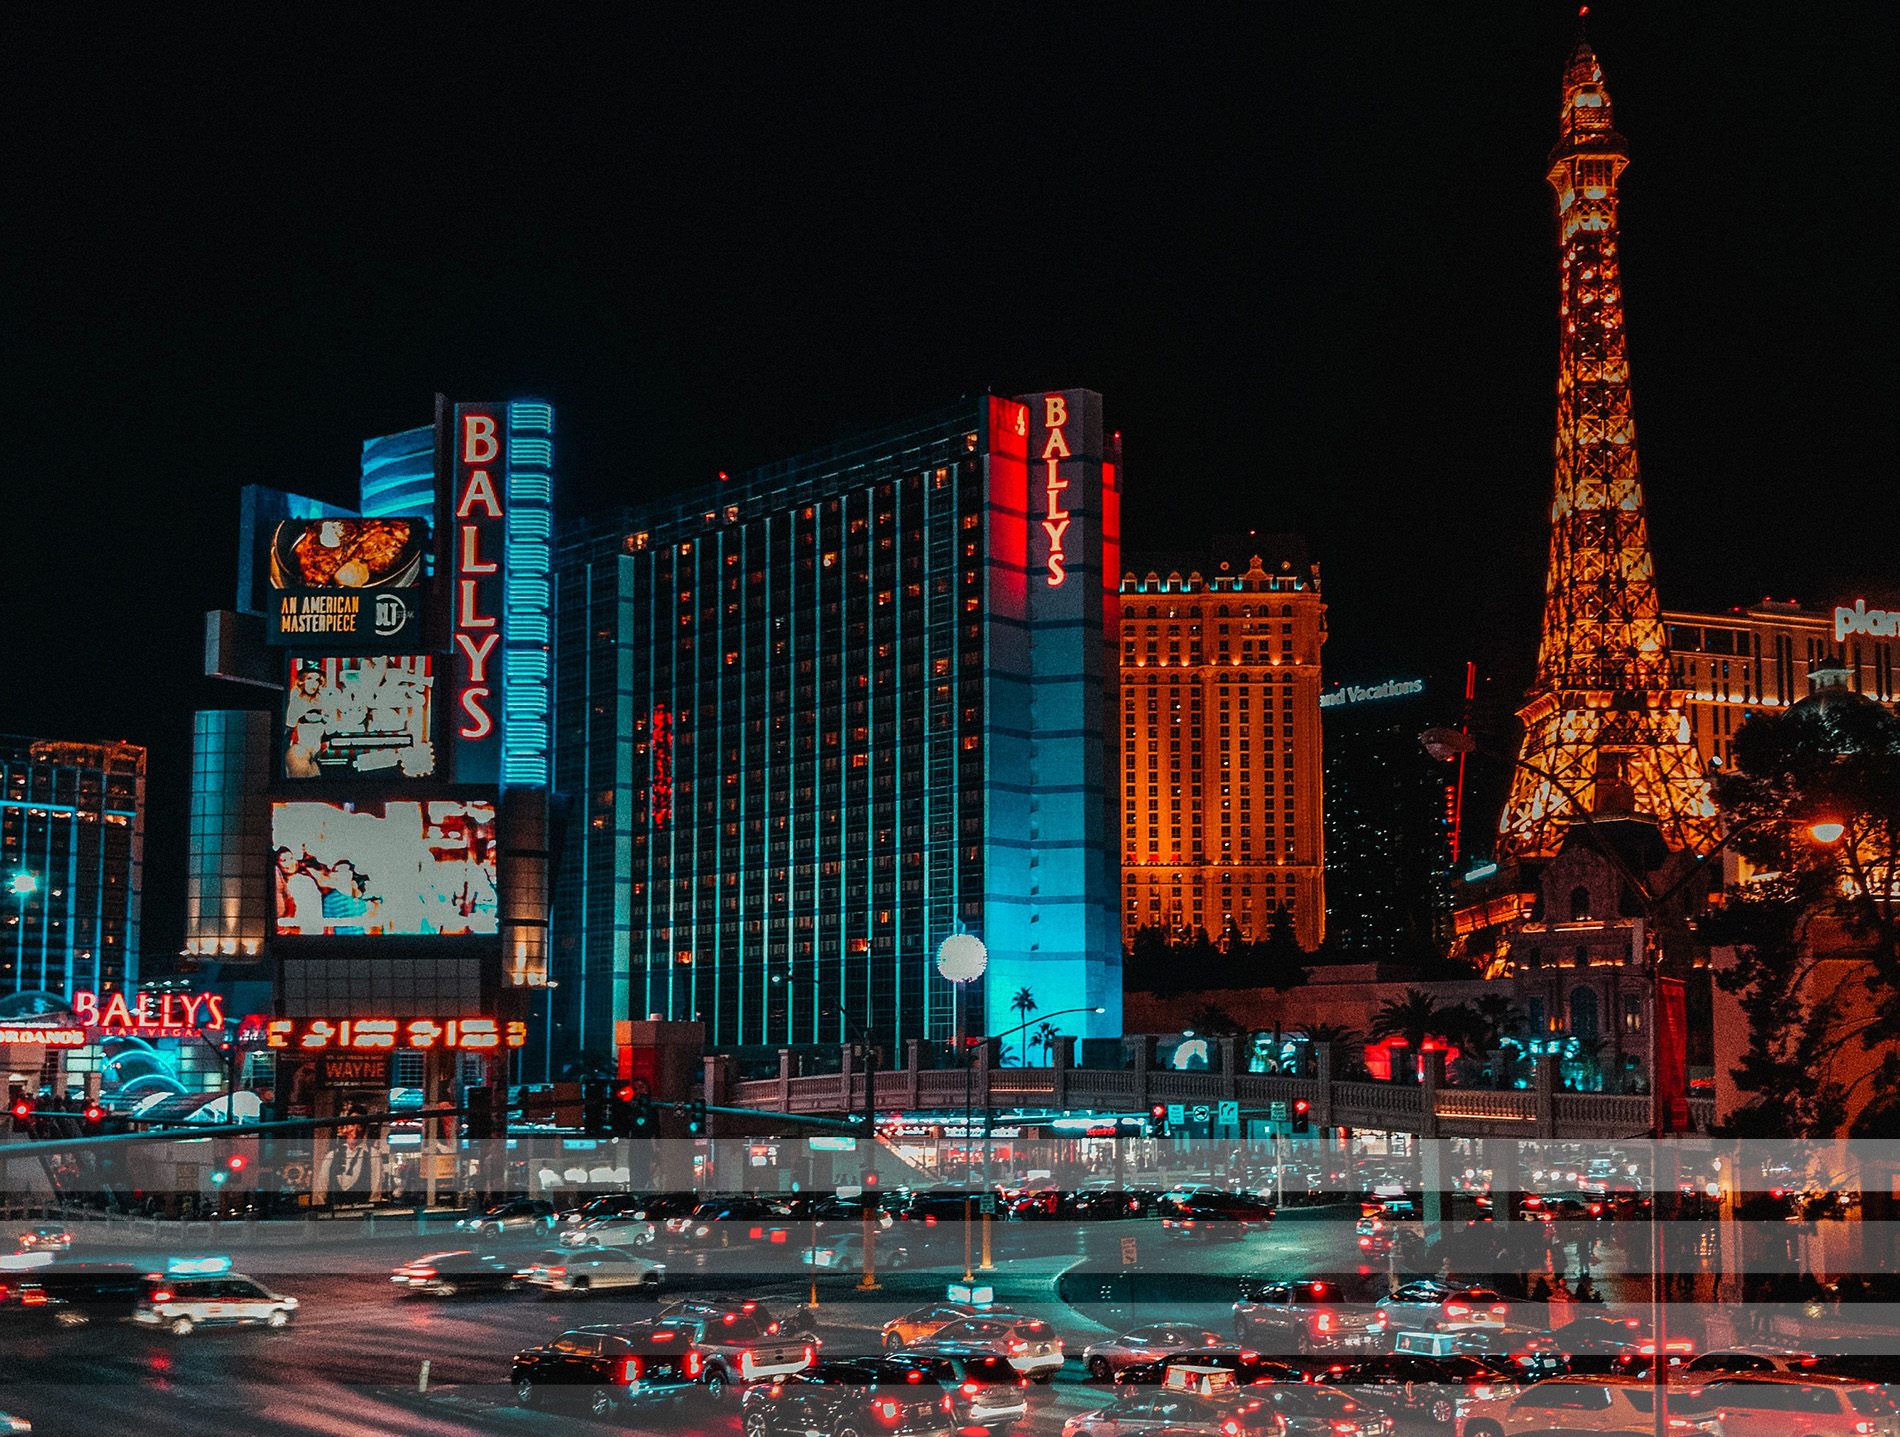 View of Las Vegas at night.